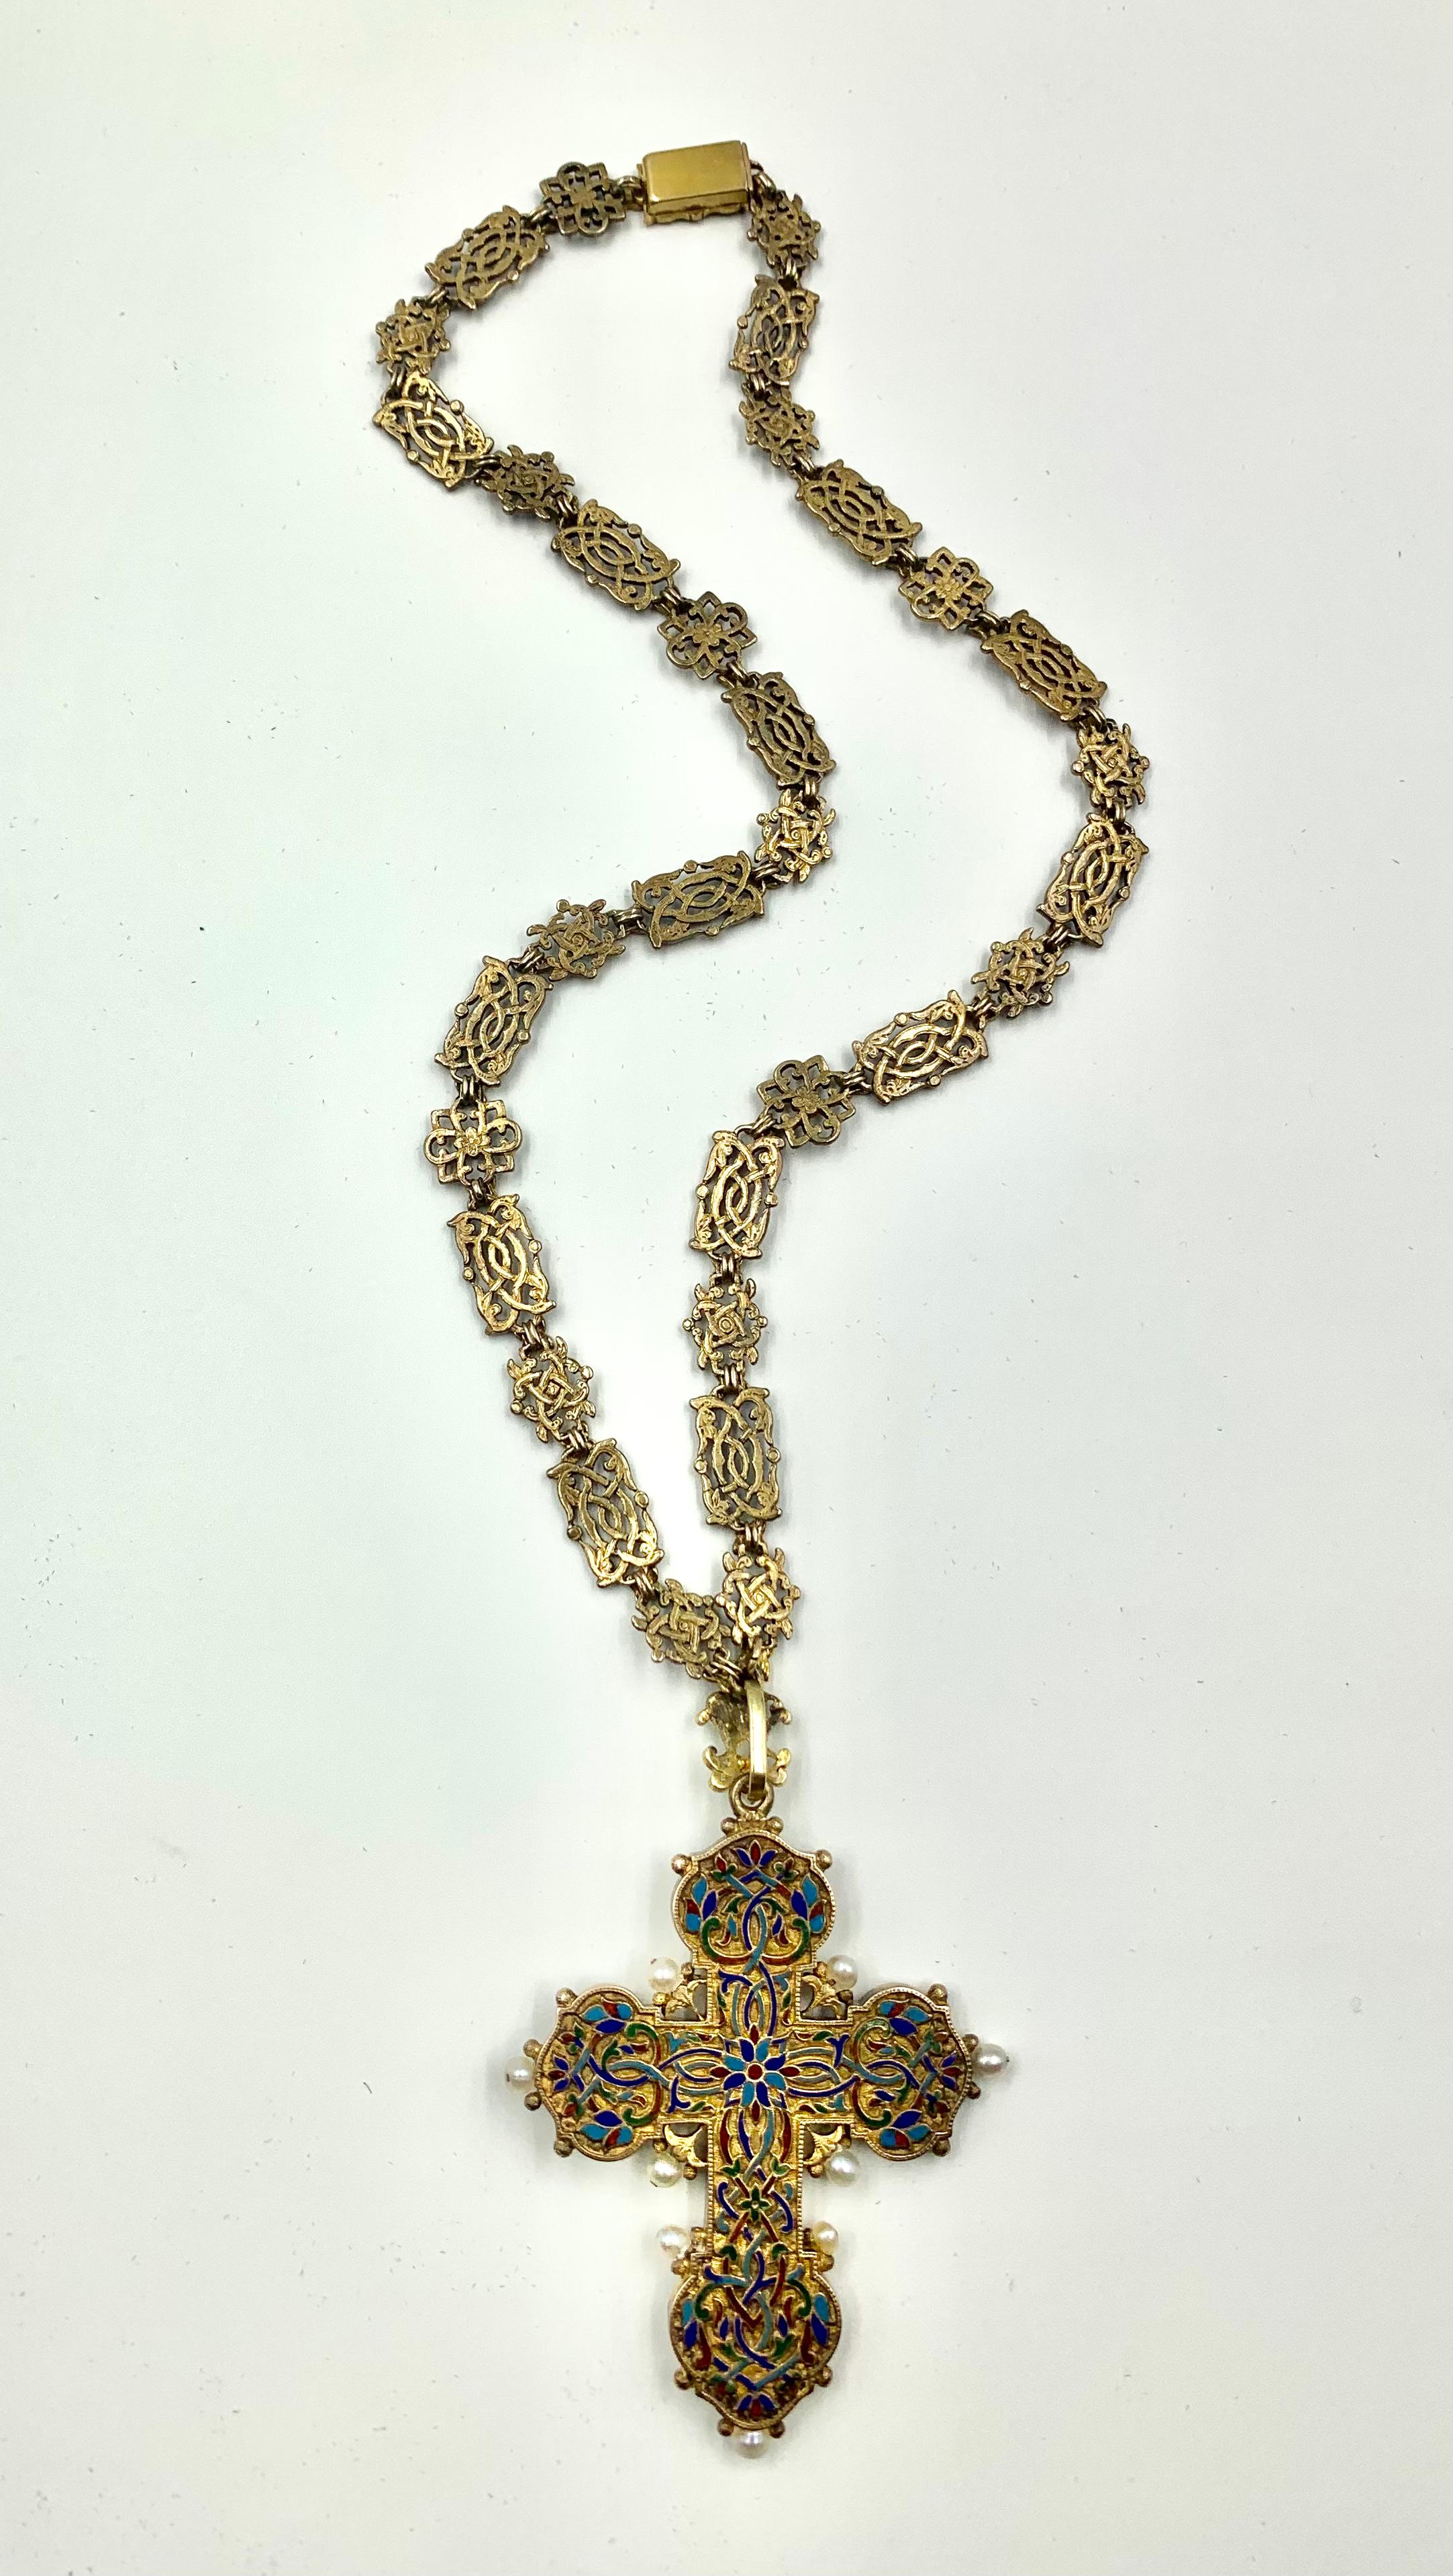 Antique Renaissance Revival Polychrome Enamel, Pearl 14K Gold Cross Necklace For Sale 5